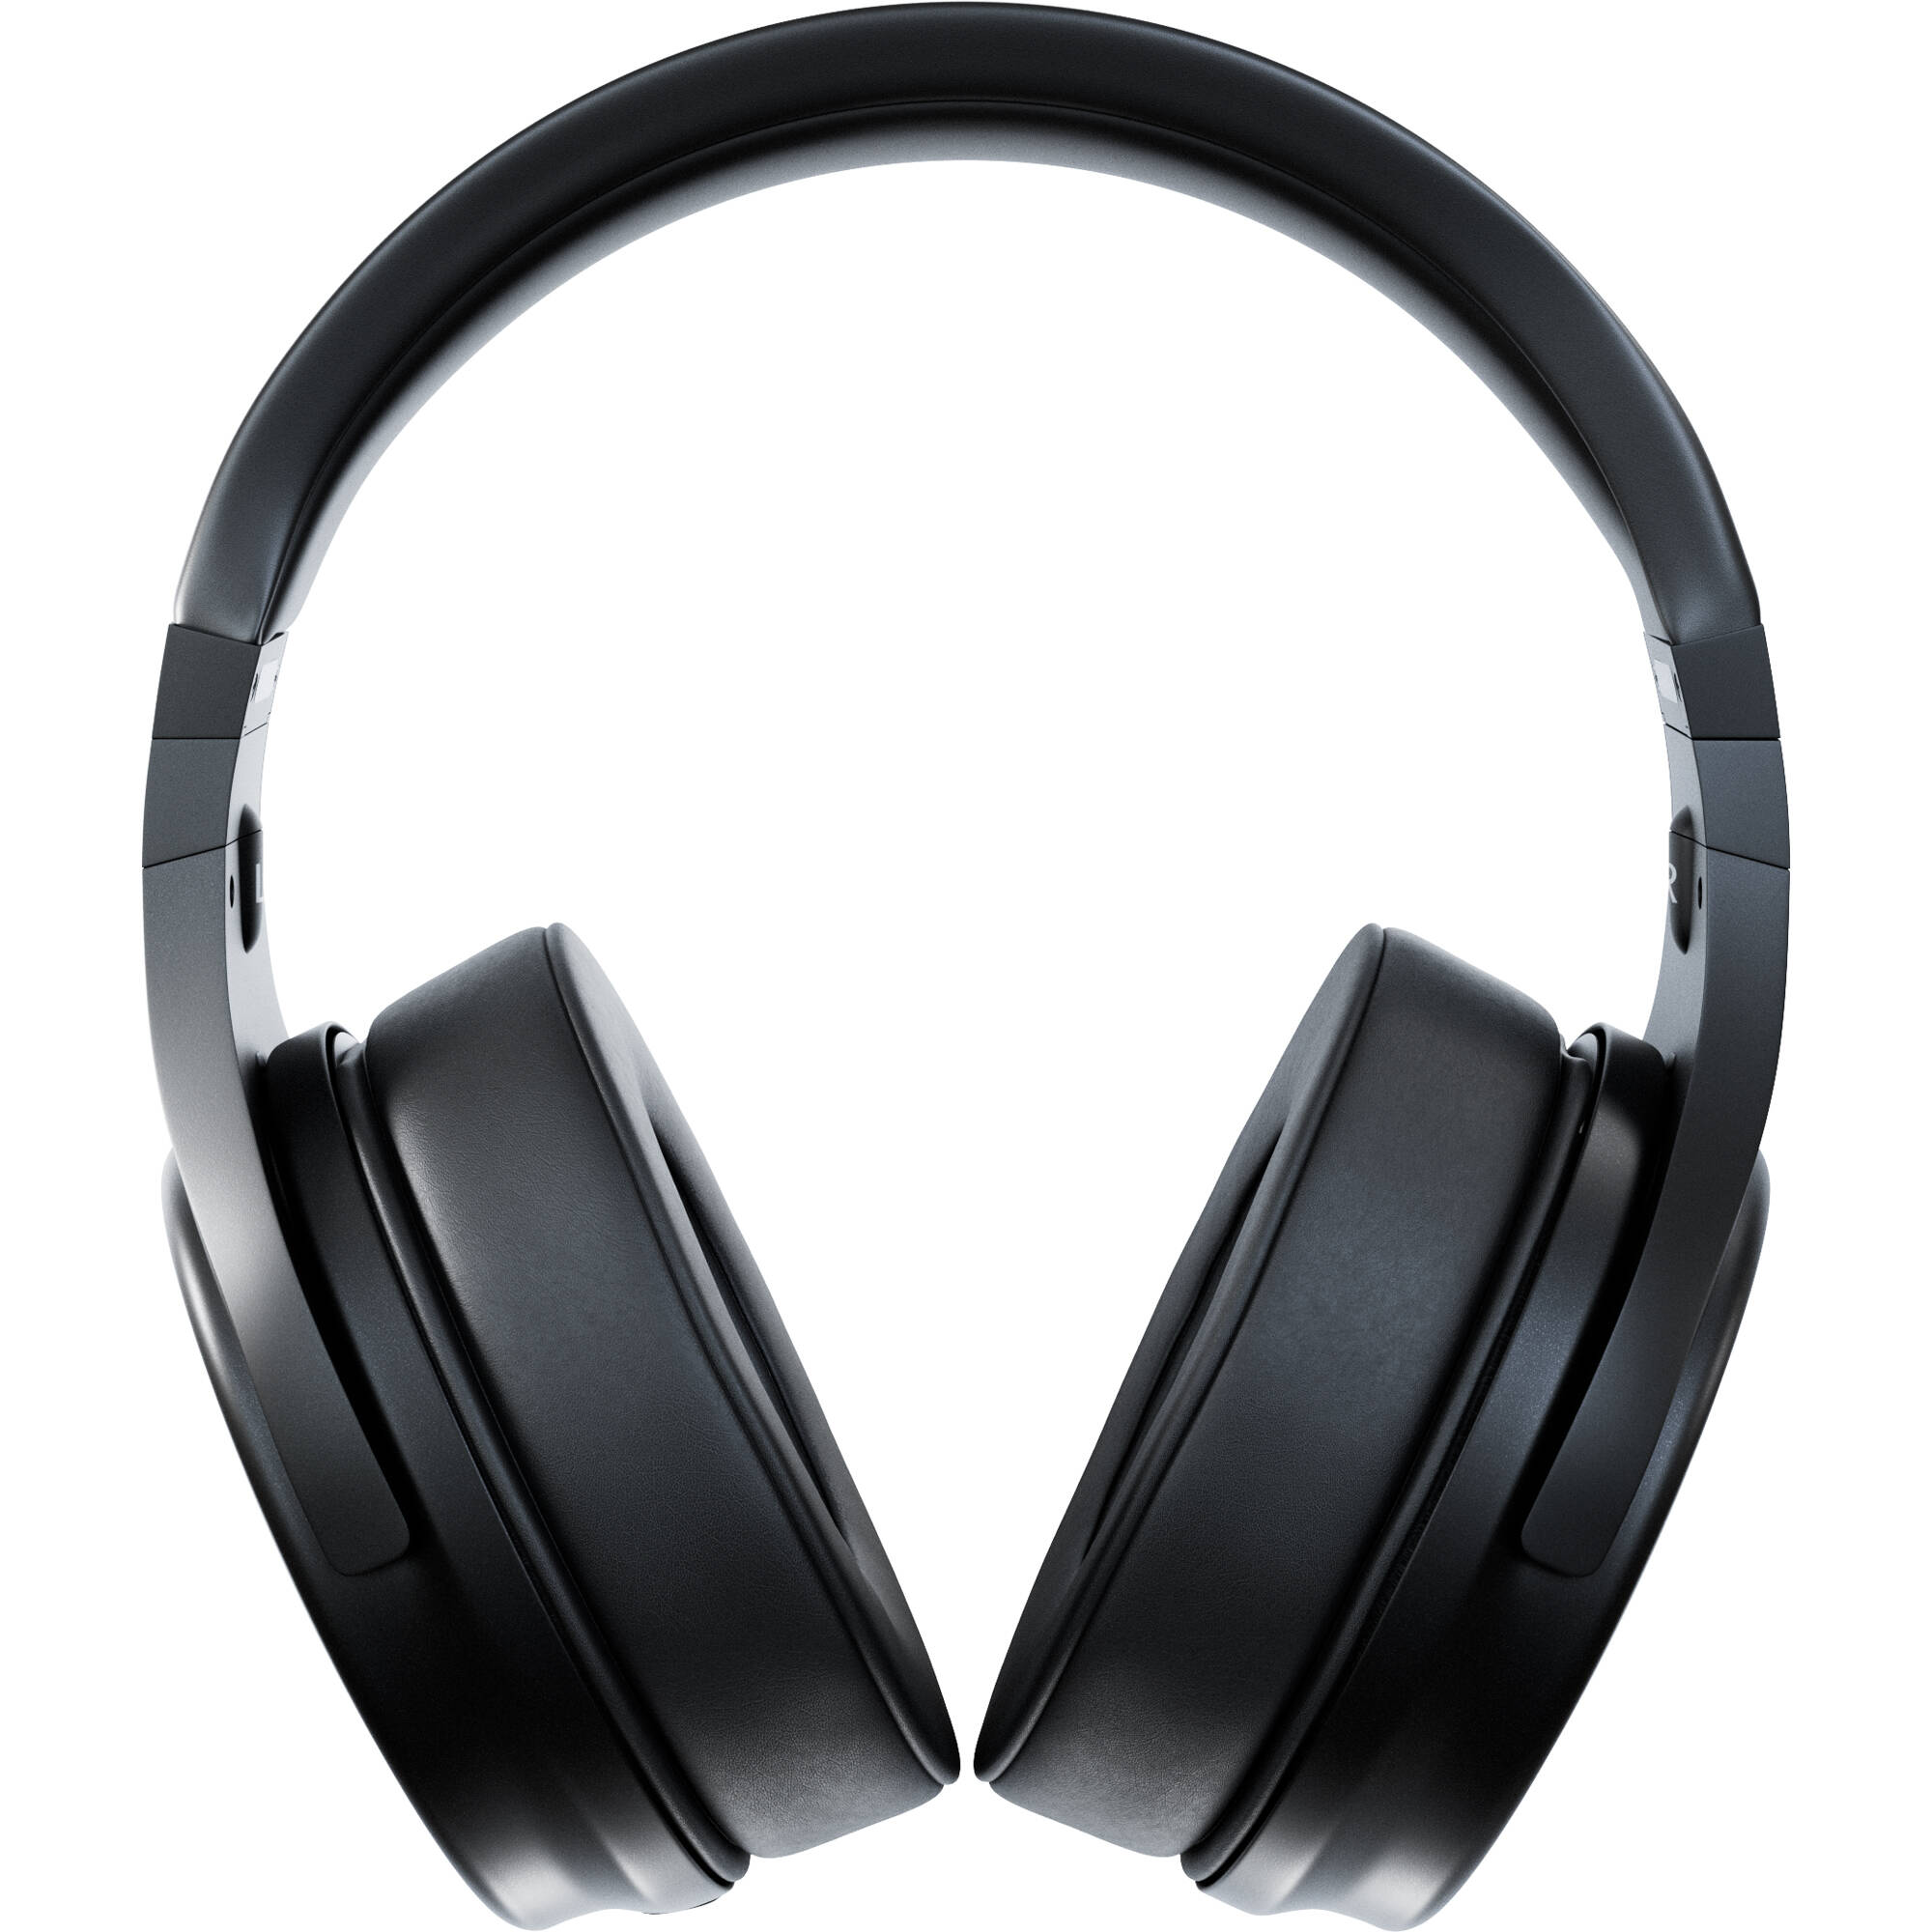 Steven Slate Audio VSX Modeling Headphones